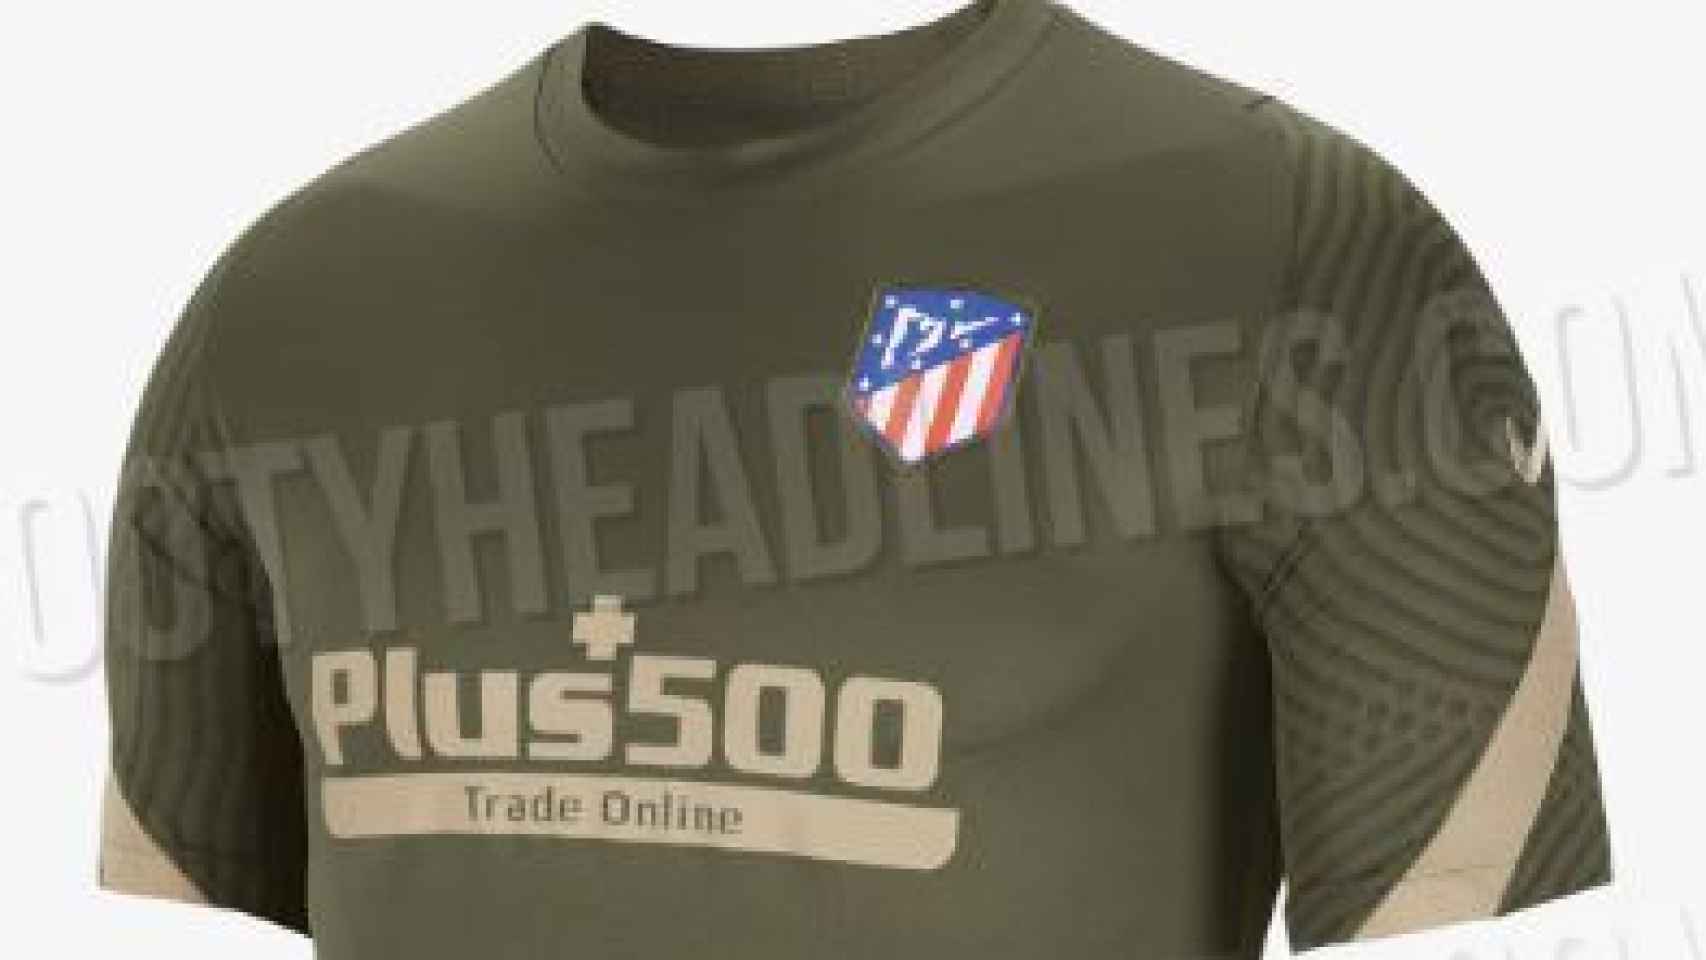 Camiseta de entrenamiento del Atlético de Madrid para la temporada 2020/2021. Foto: footyheadlines.com